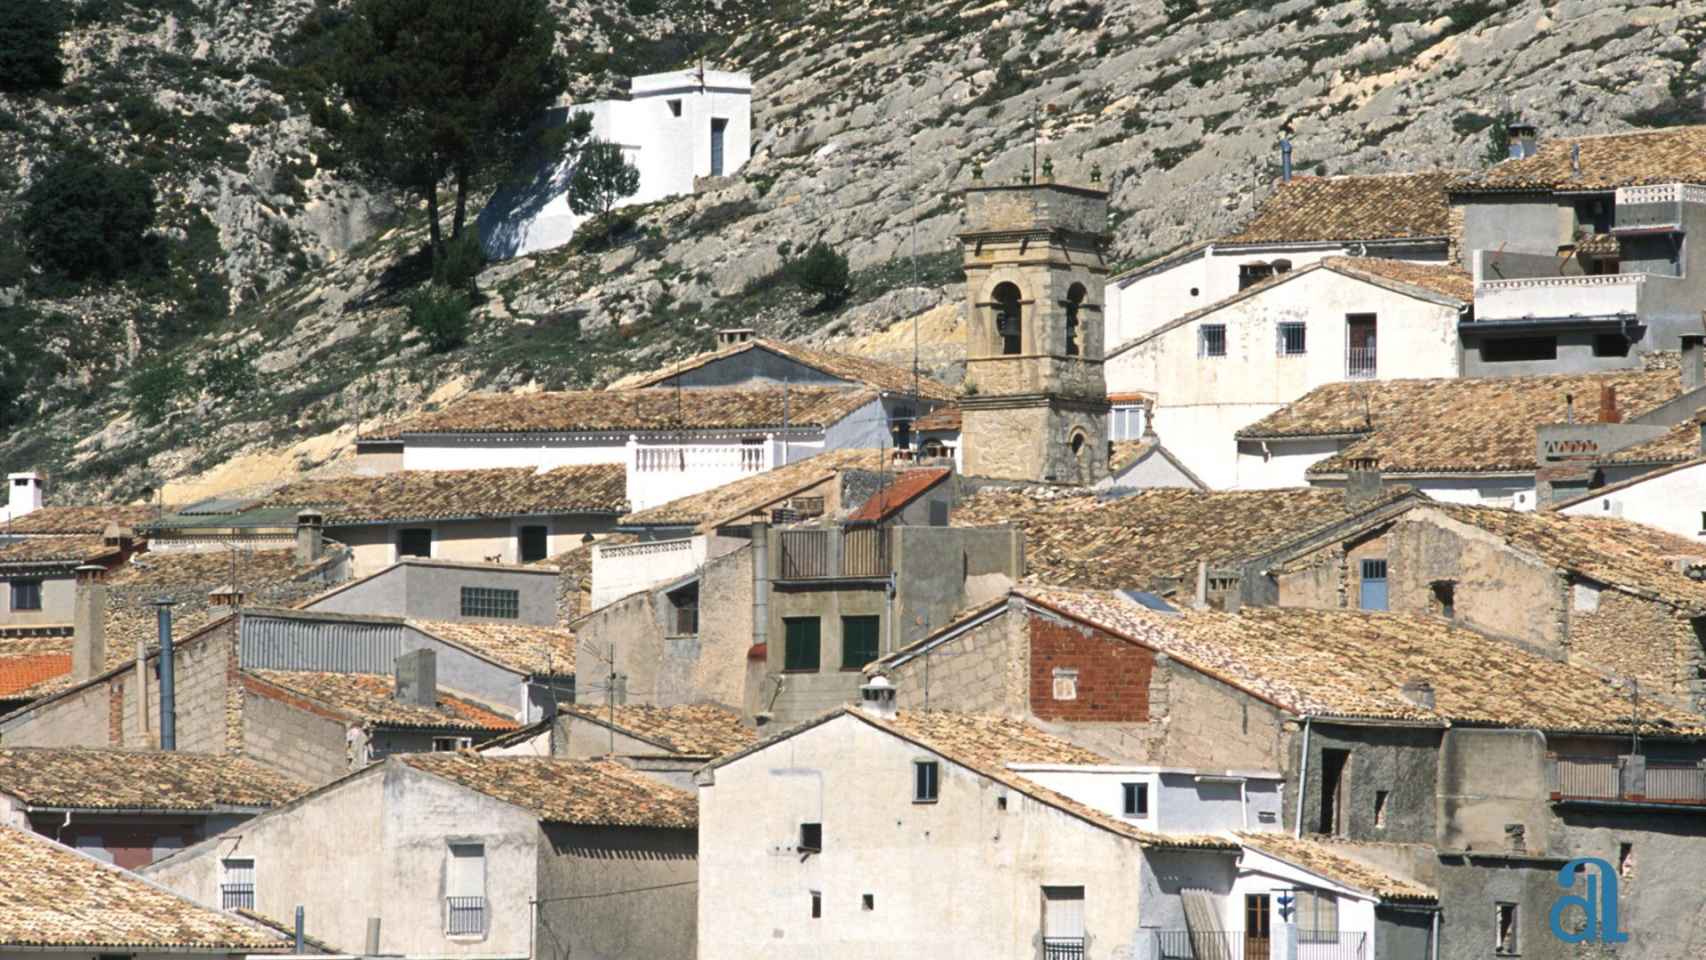 Algunas casas del pueblo de Tollos en Alicante.